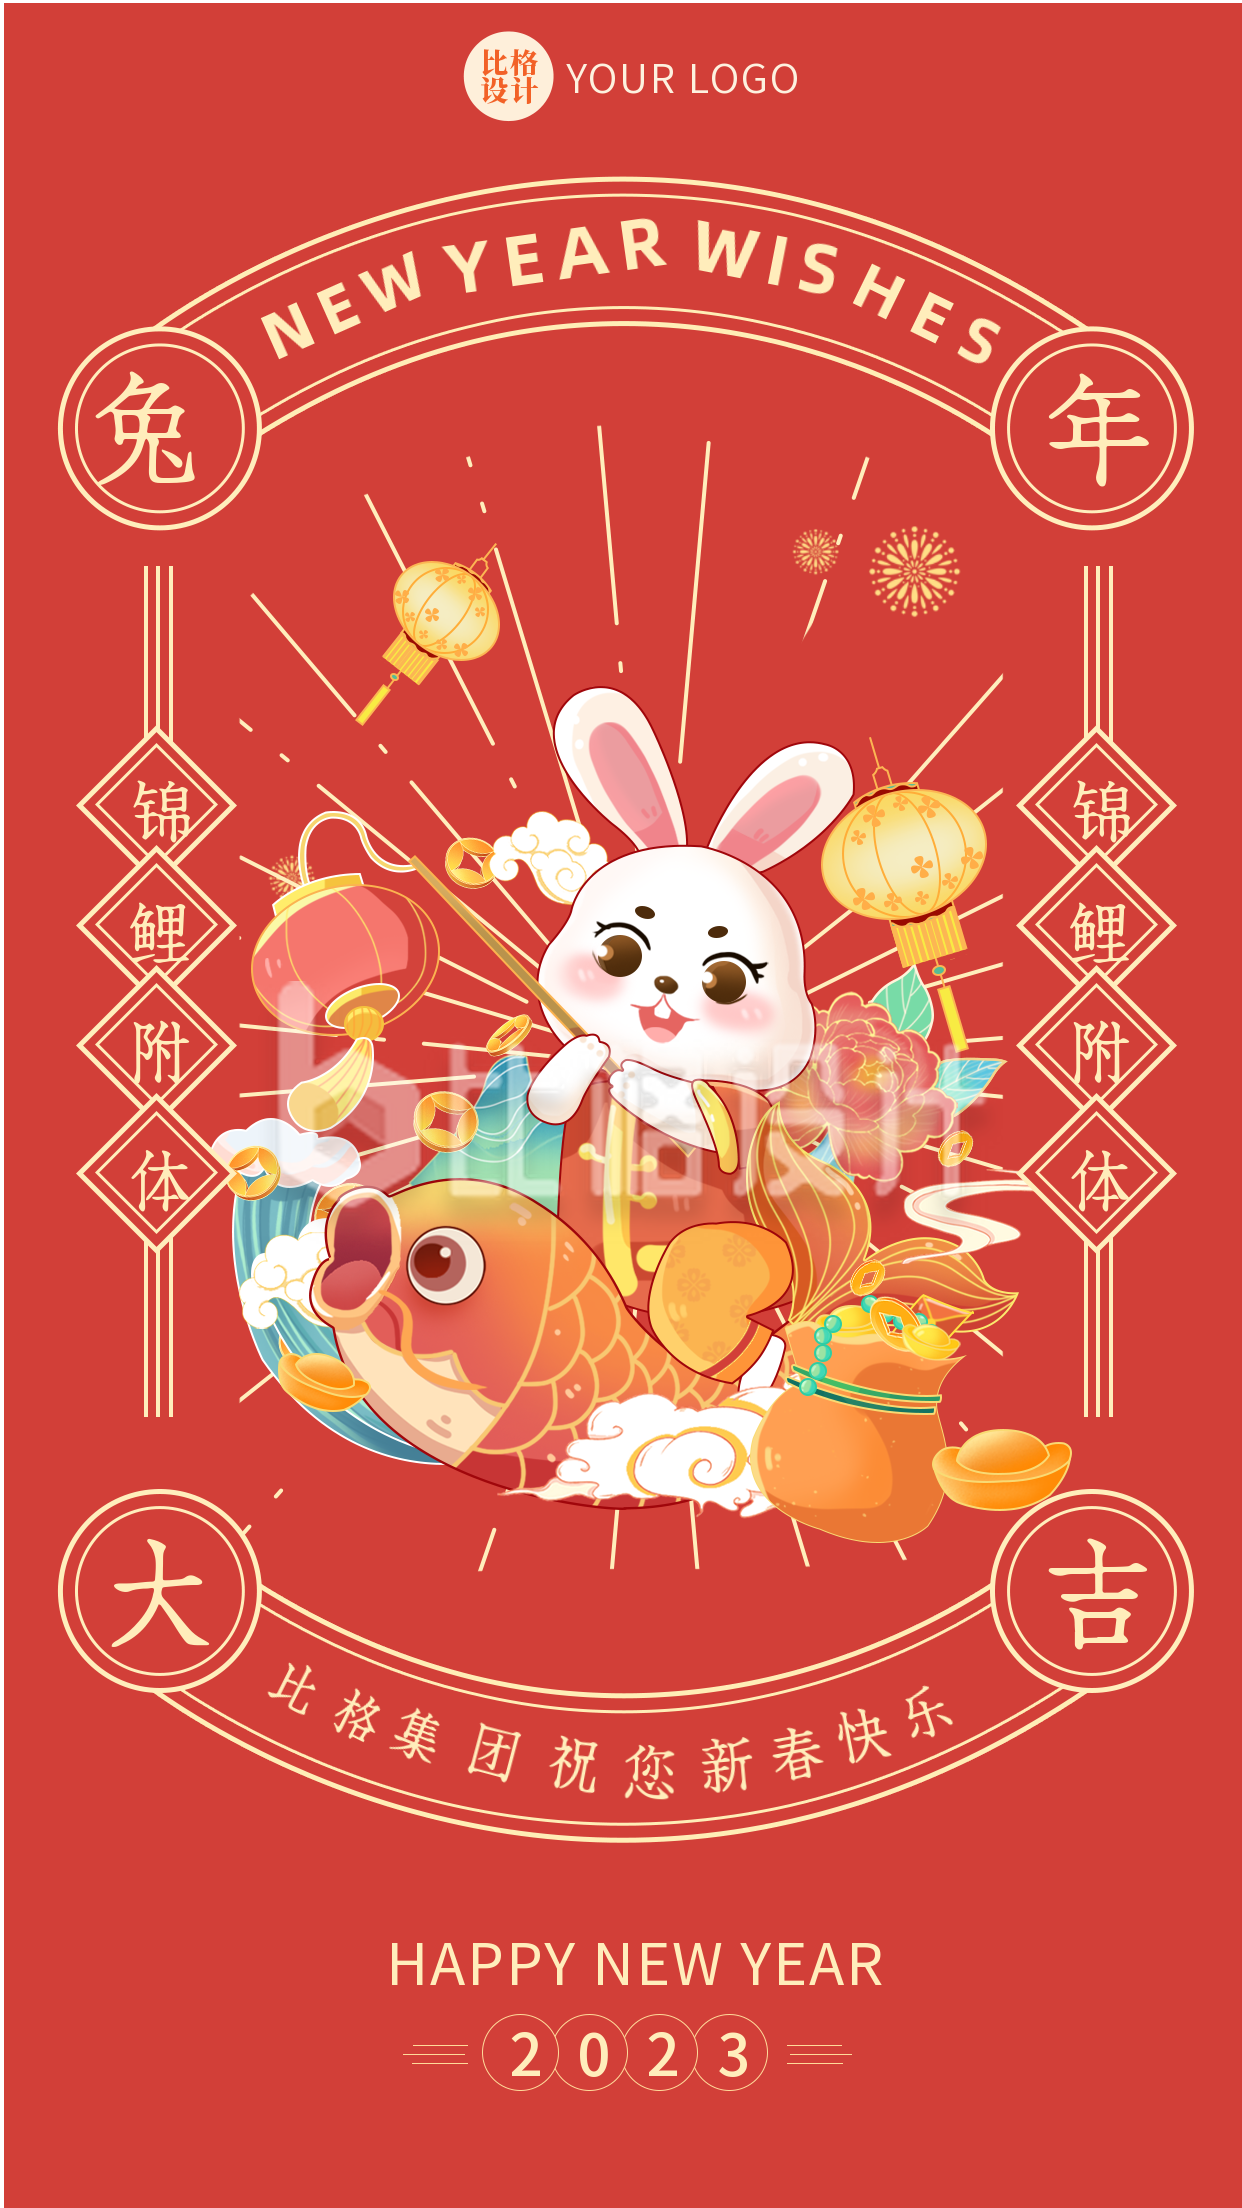 橙色手绘兔子祝福语手机海报